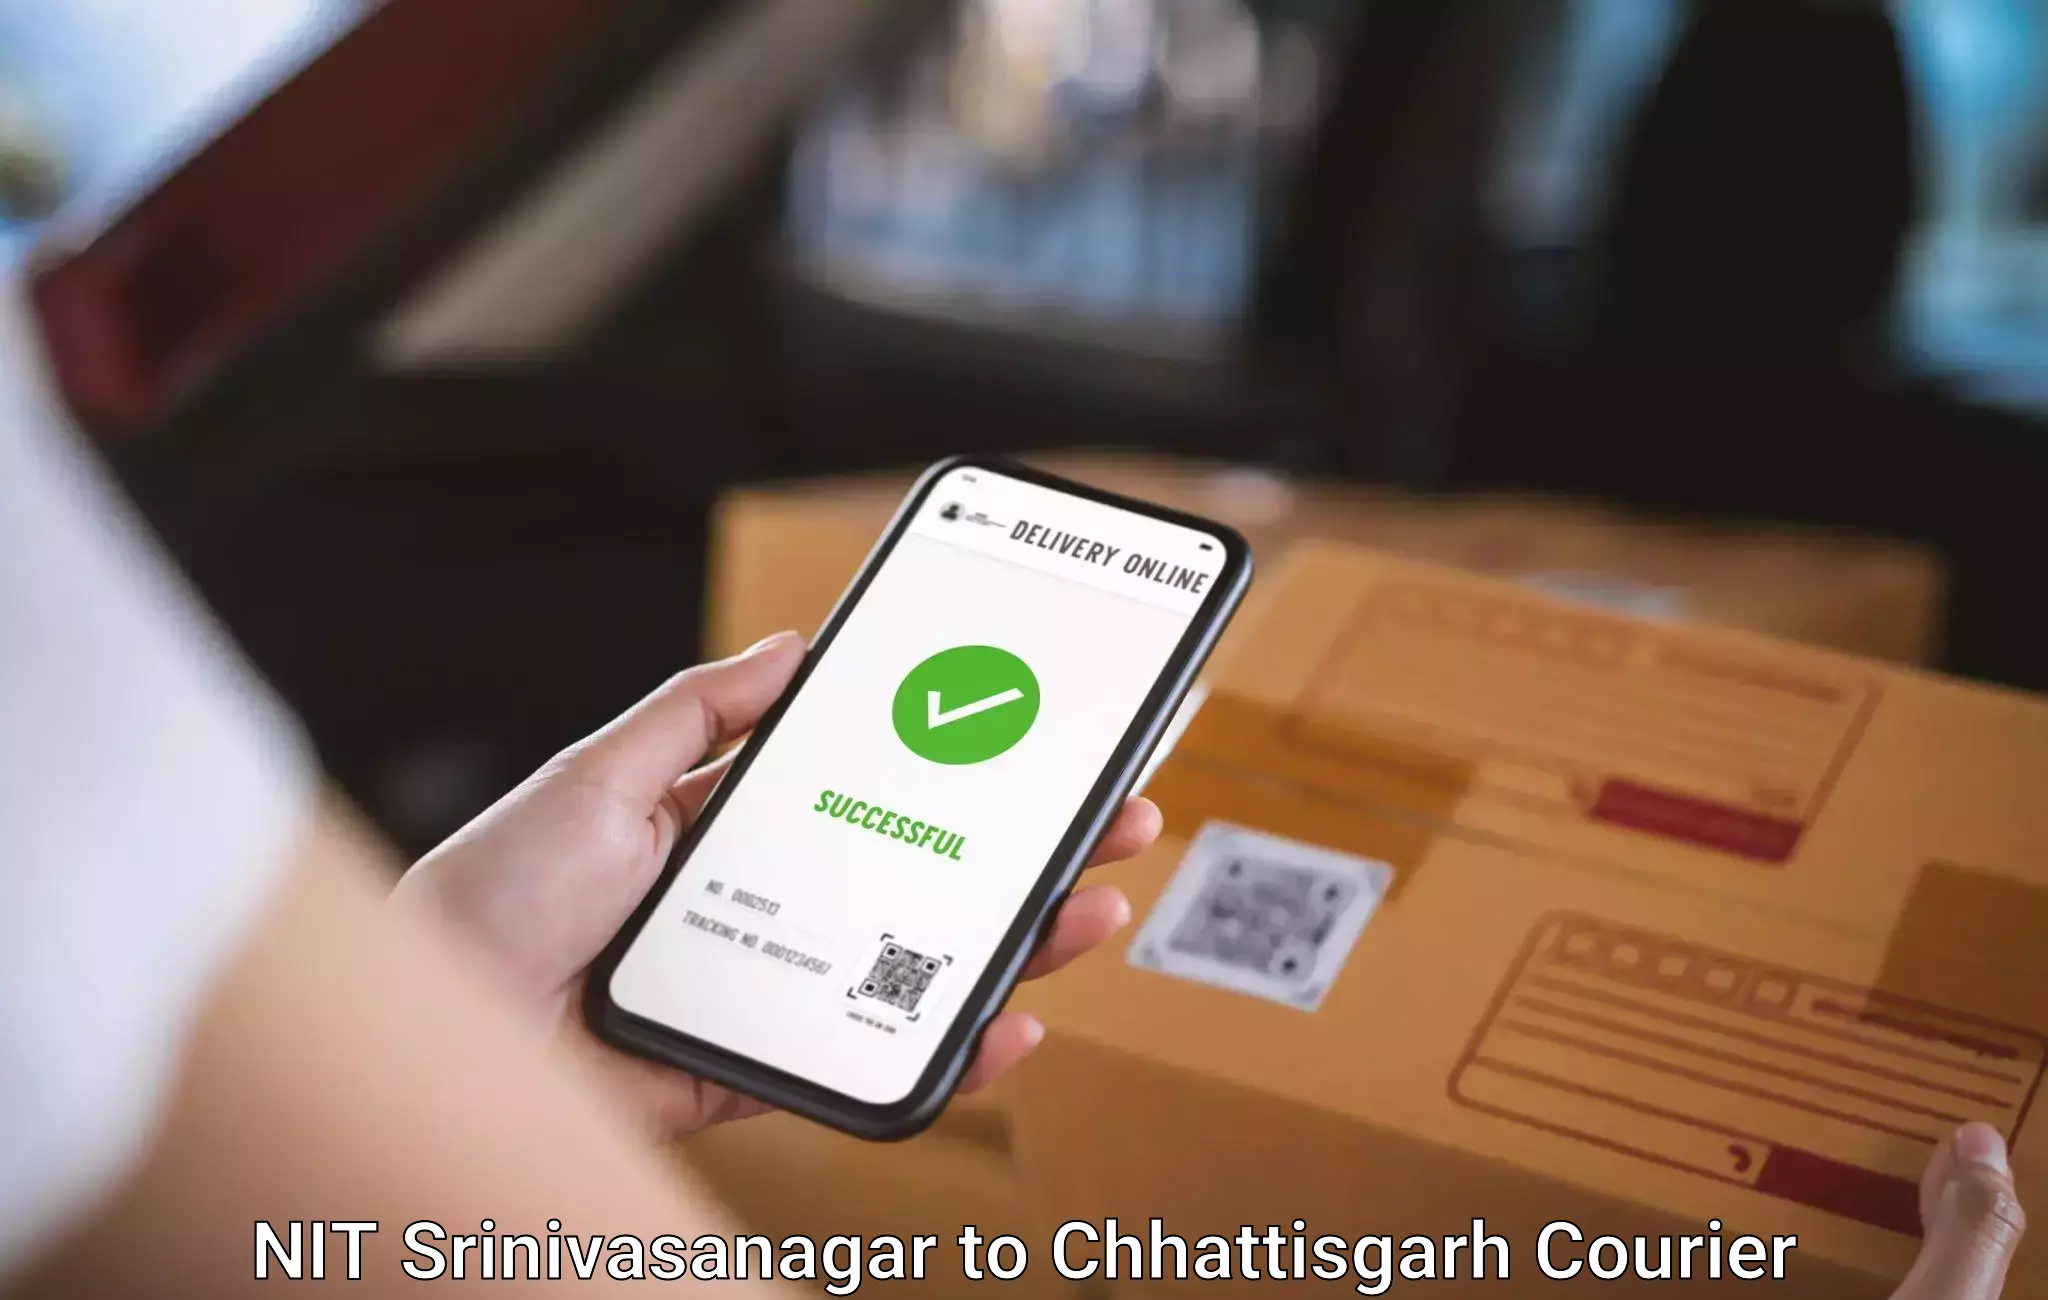 Luggage shipment tracking NIT Srinivasanagar to Bijapur Chhattisgarh